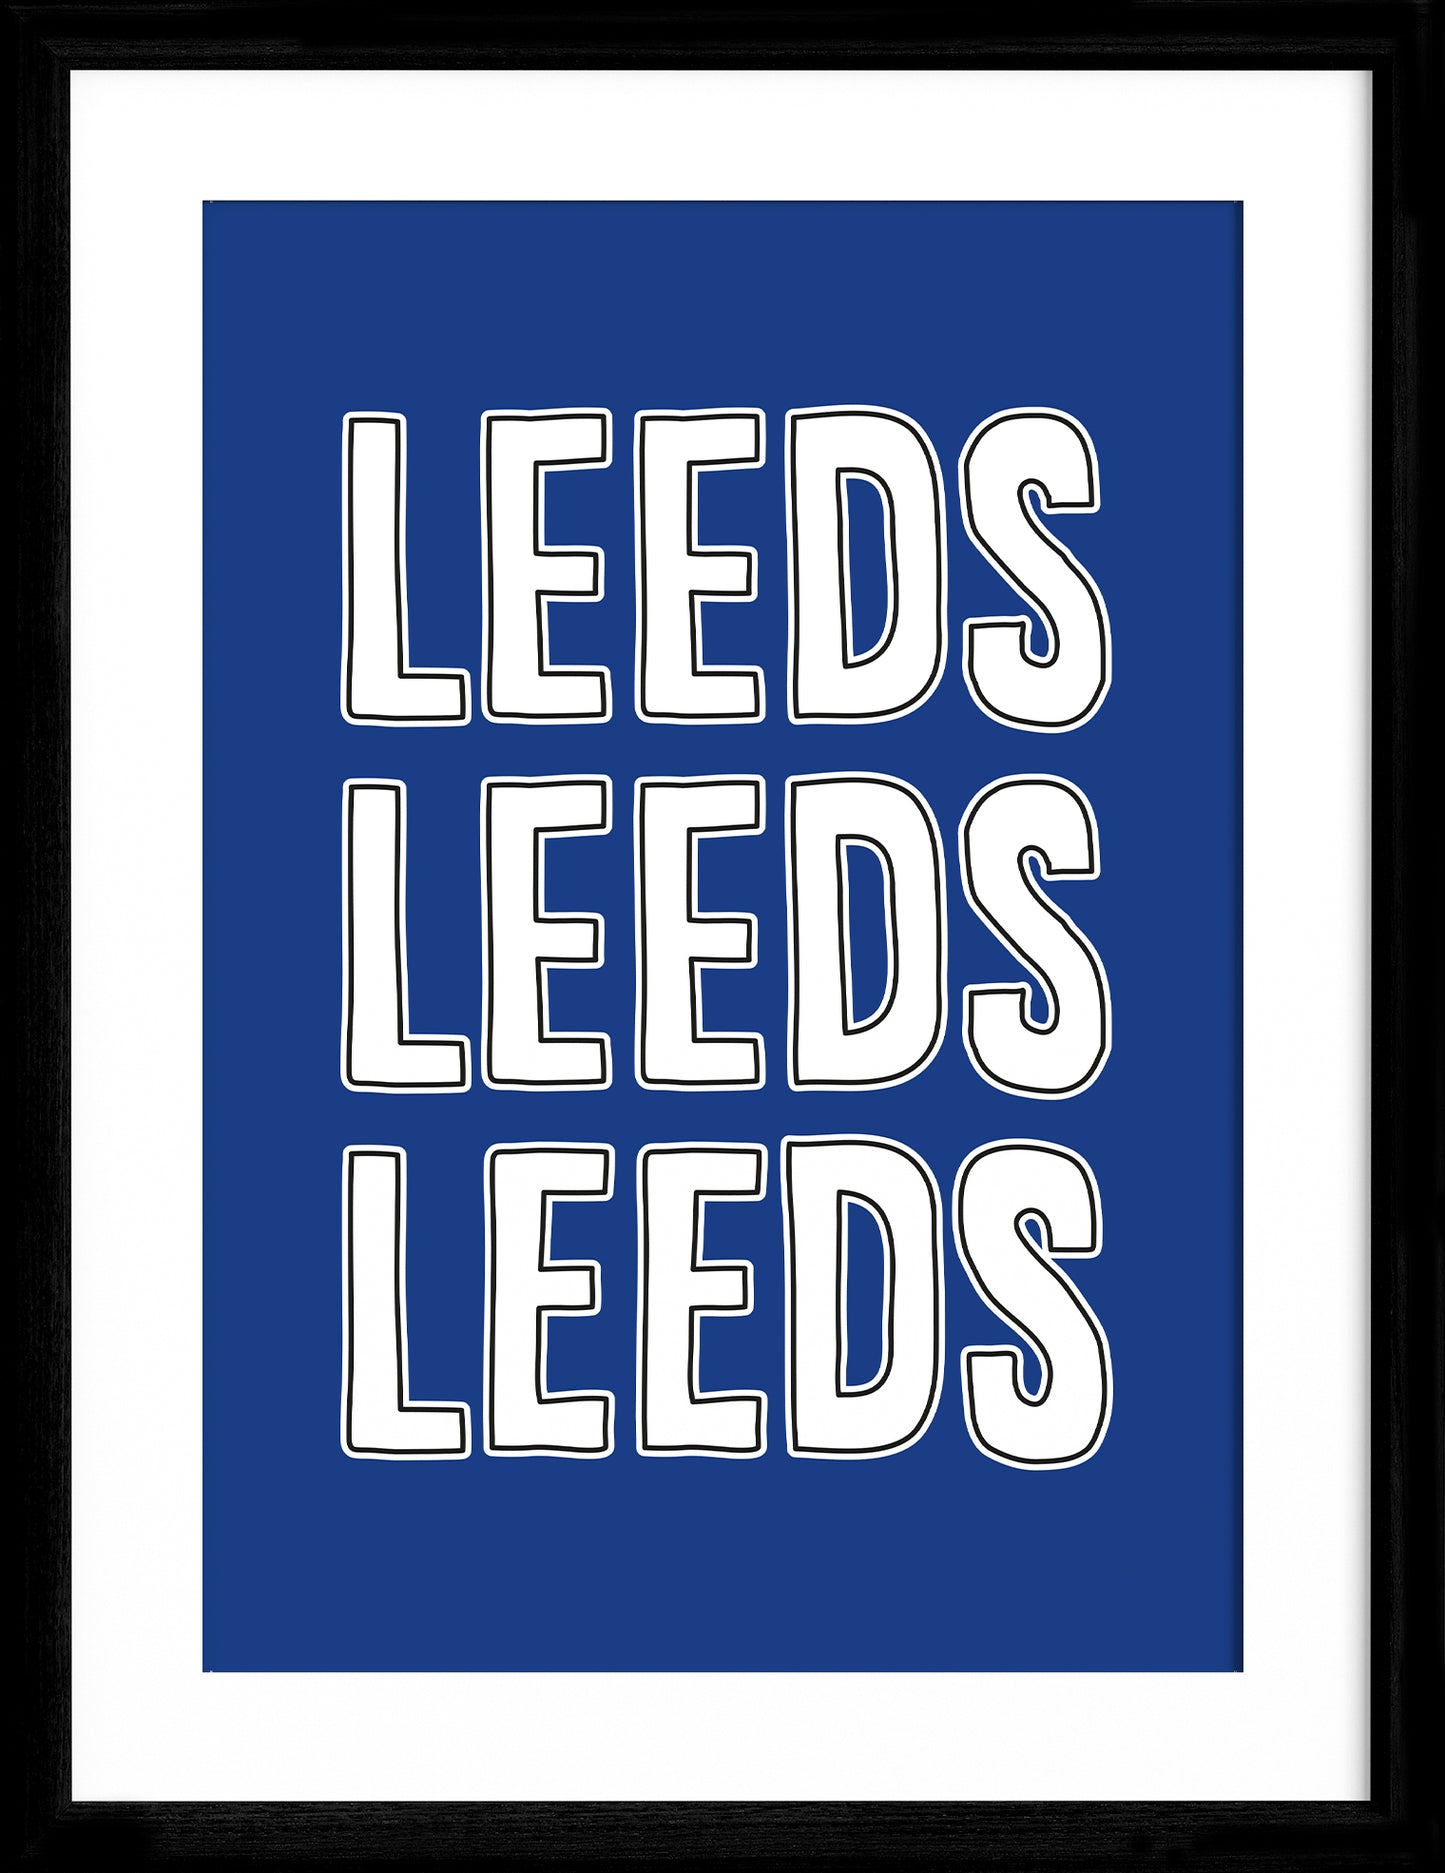 Leeds Leeds Leeds